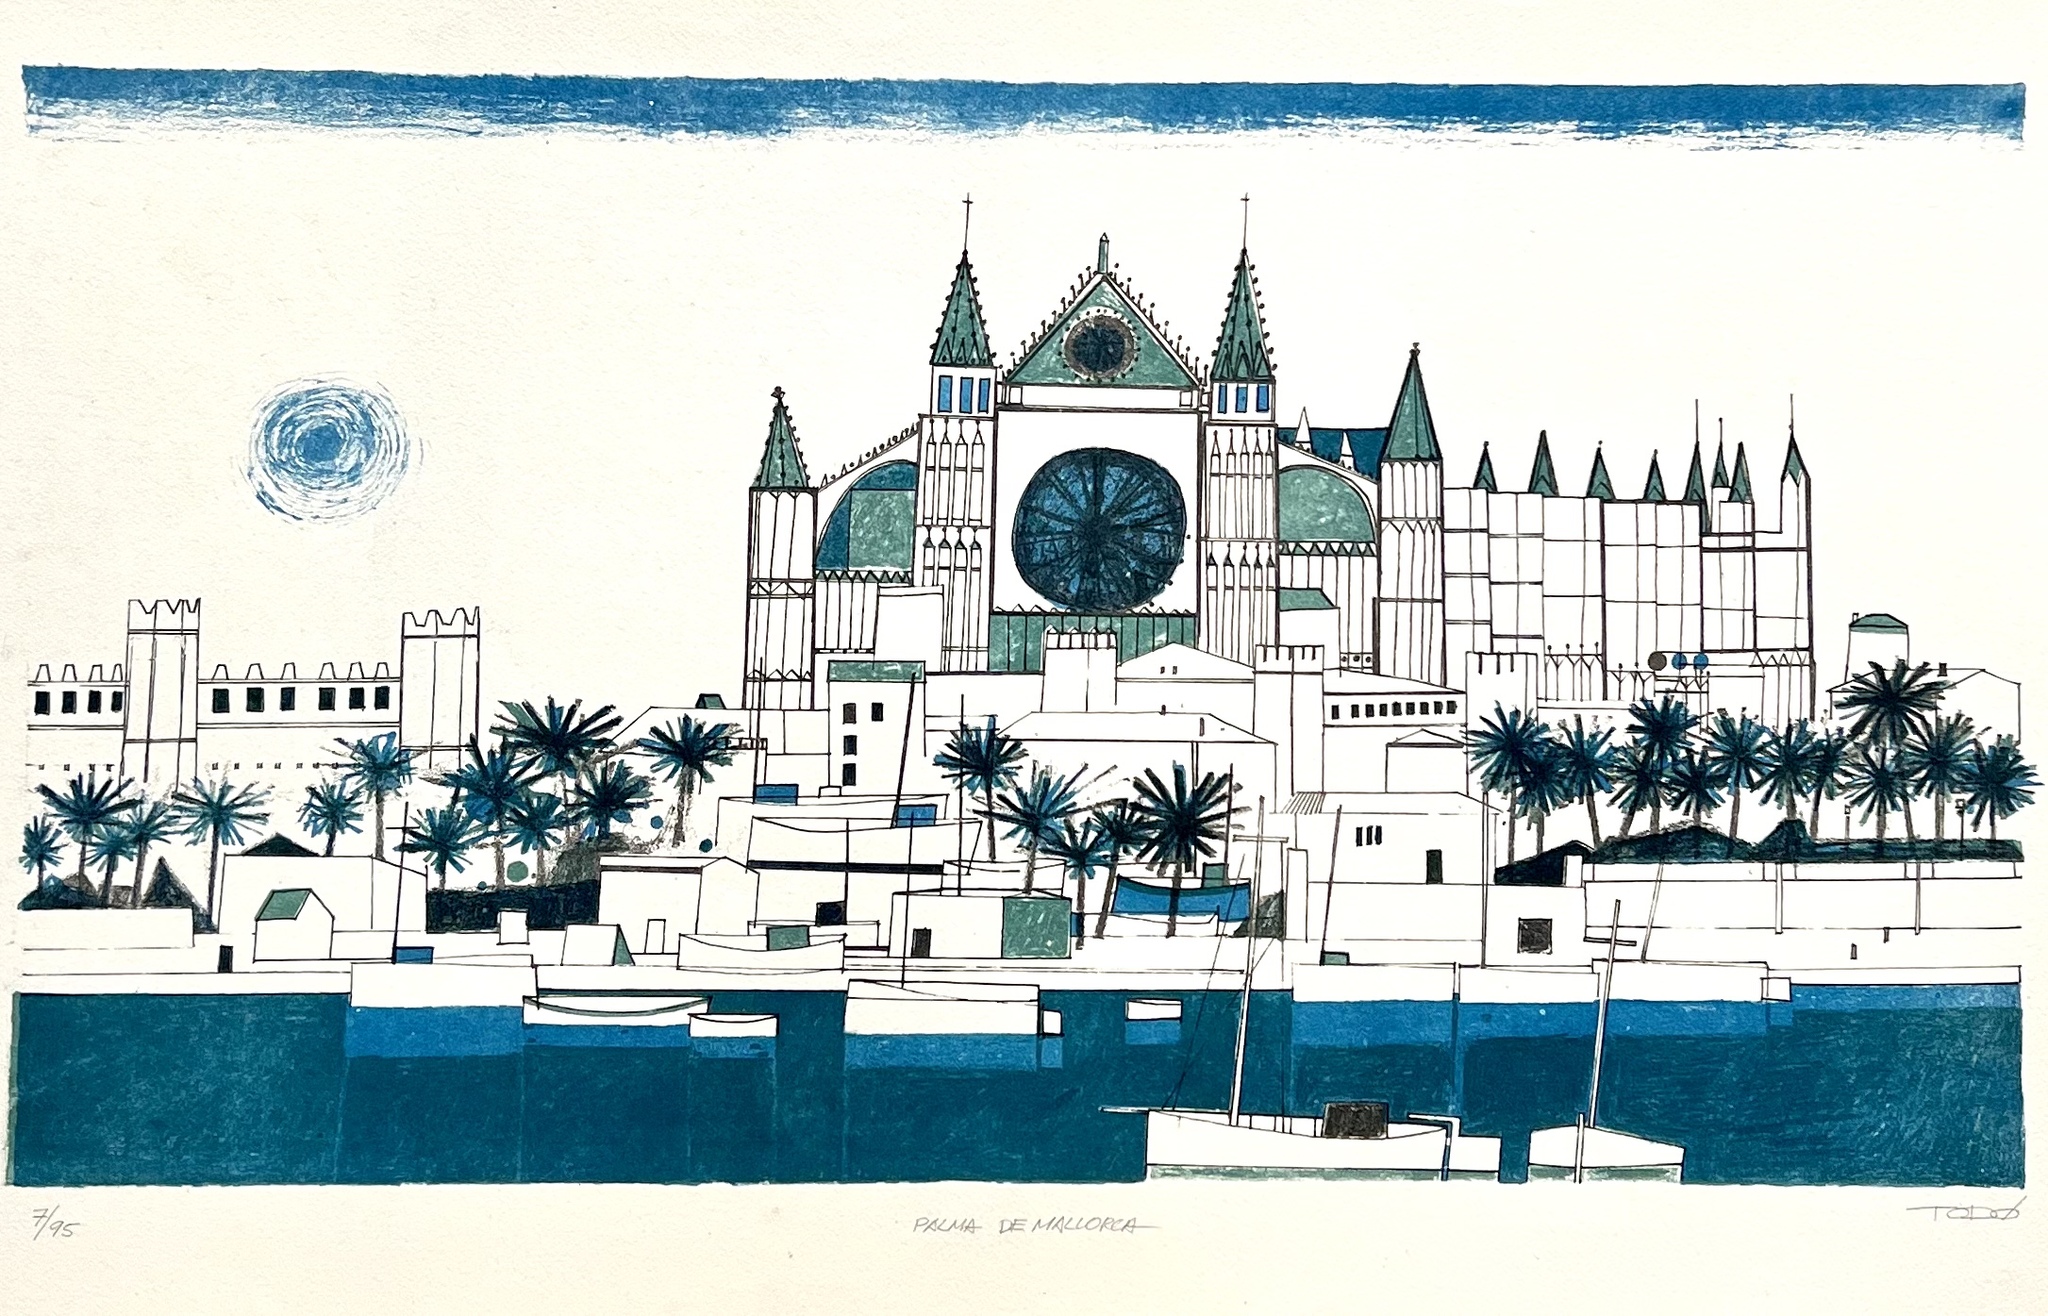 "Palma de Mallorca" Färglitografi av Francisco Todo Garcia. 78x47 cm